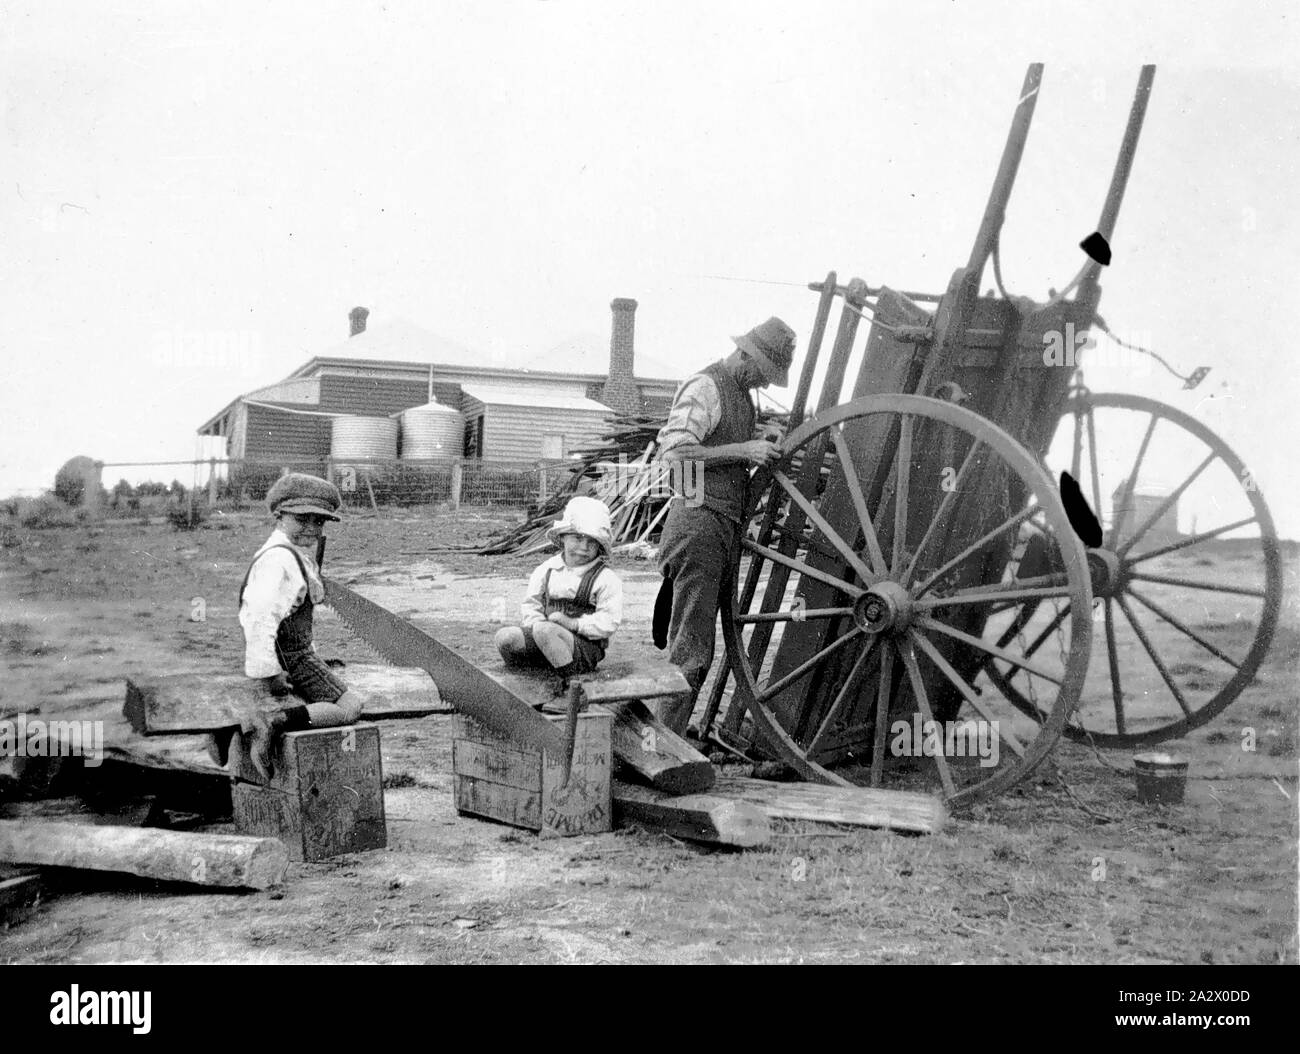 Négatif - Sandford District, Victoria, 1927, un homme de la réparation d'un panier de printemps. Deux petits garçons assis sur un journal dans lequel un cross cut vu est intégré. Le 'One Tree Hill' Homestead est dans l'arrière-plan Banque D'Images